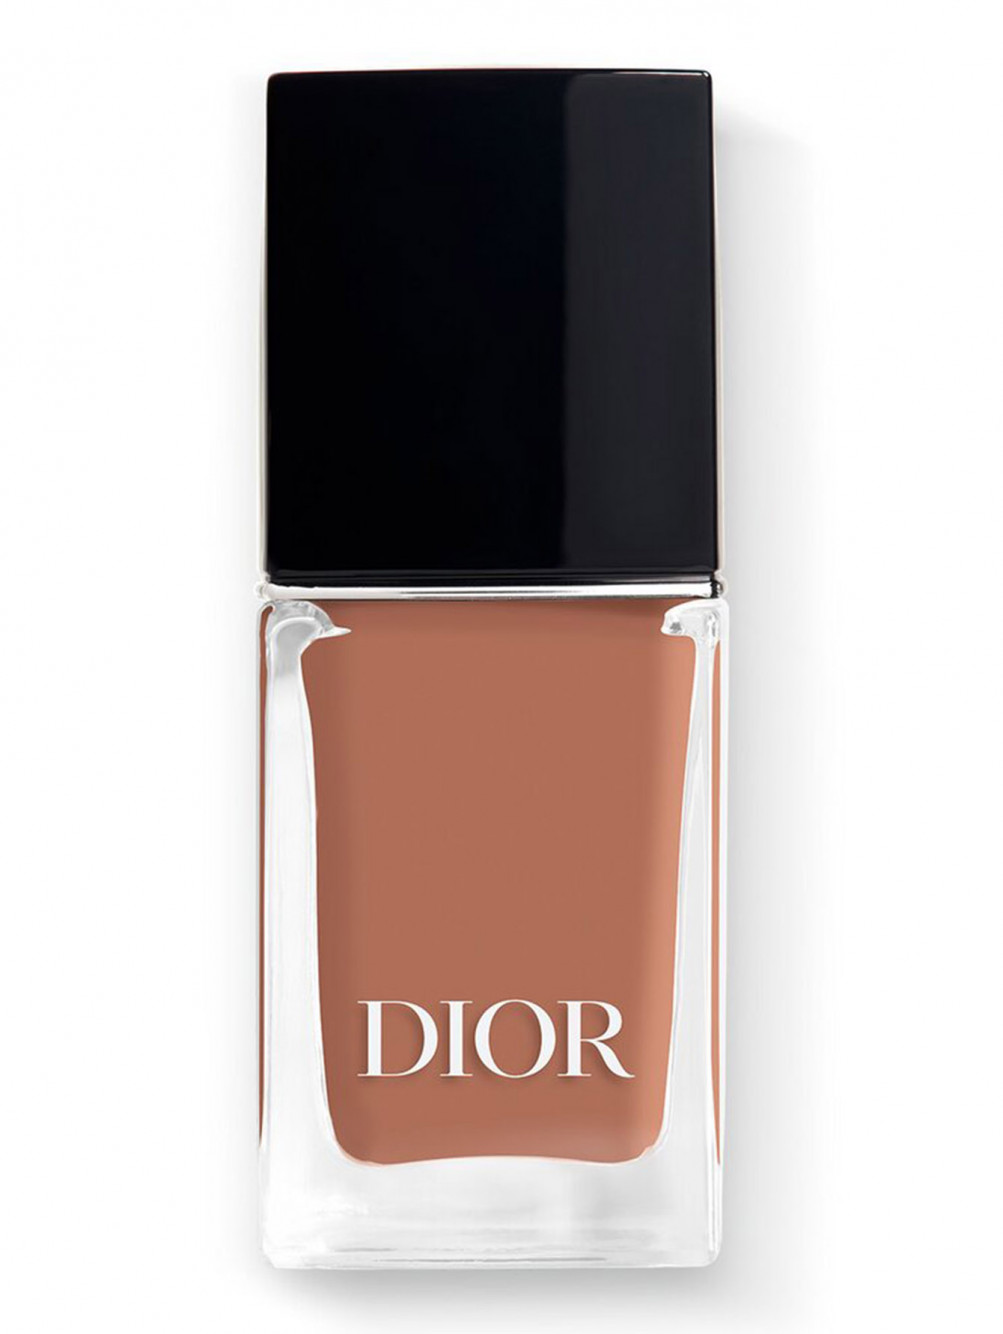 Лак для ногтей с эффектом гелевого покрытия Dior Vernis, 323 Дюна, 10 мл - Общий вид